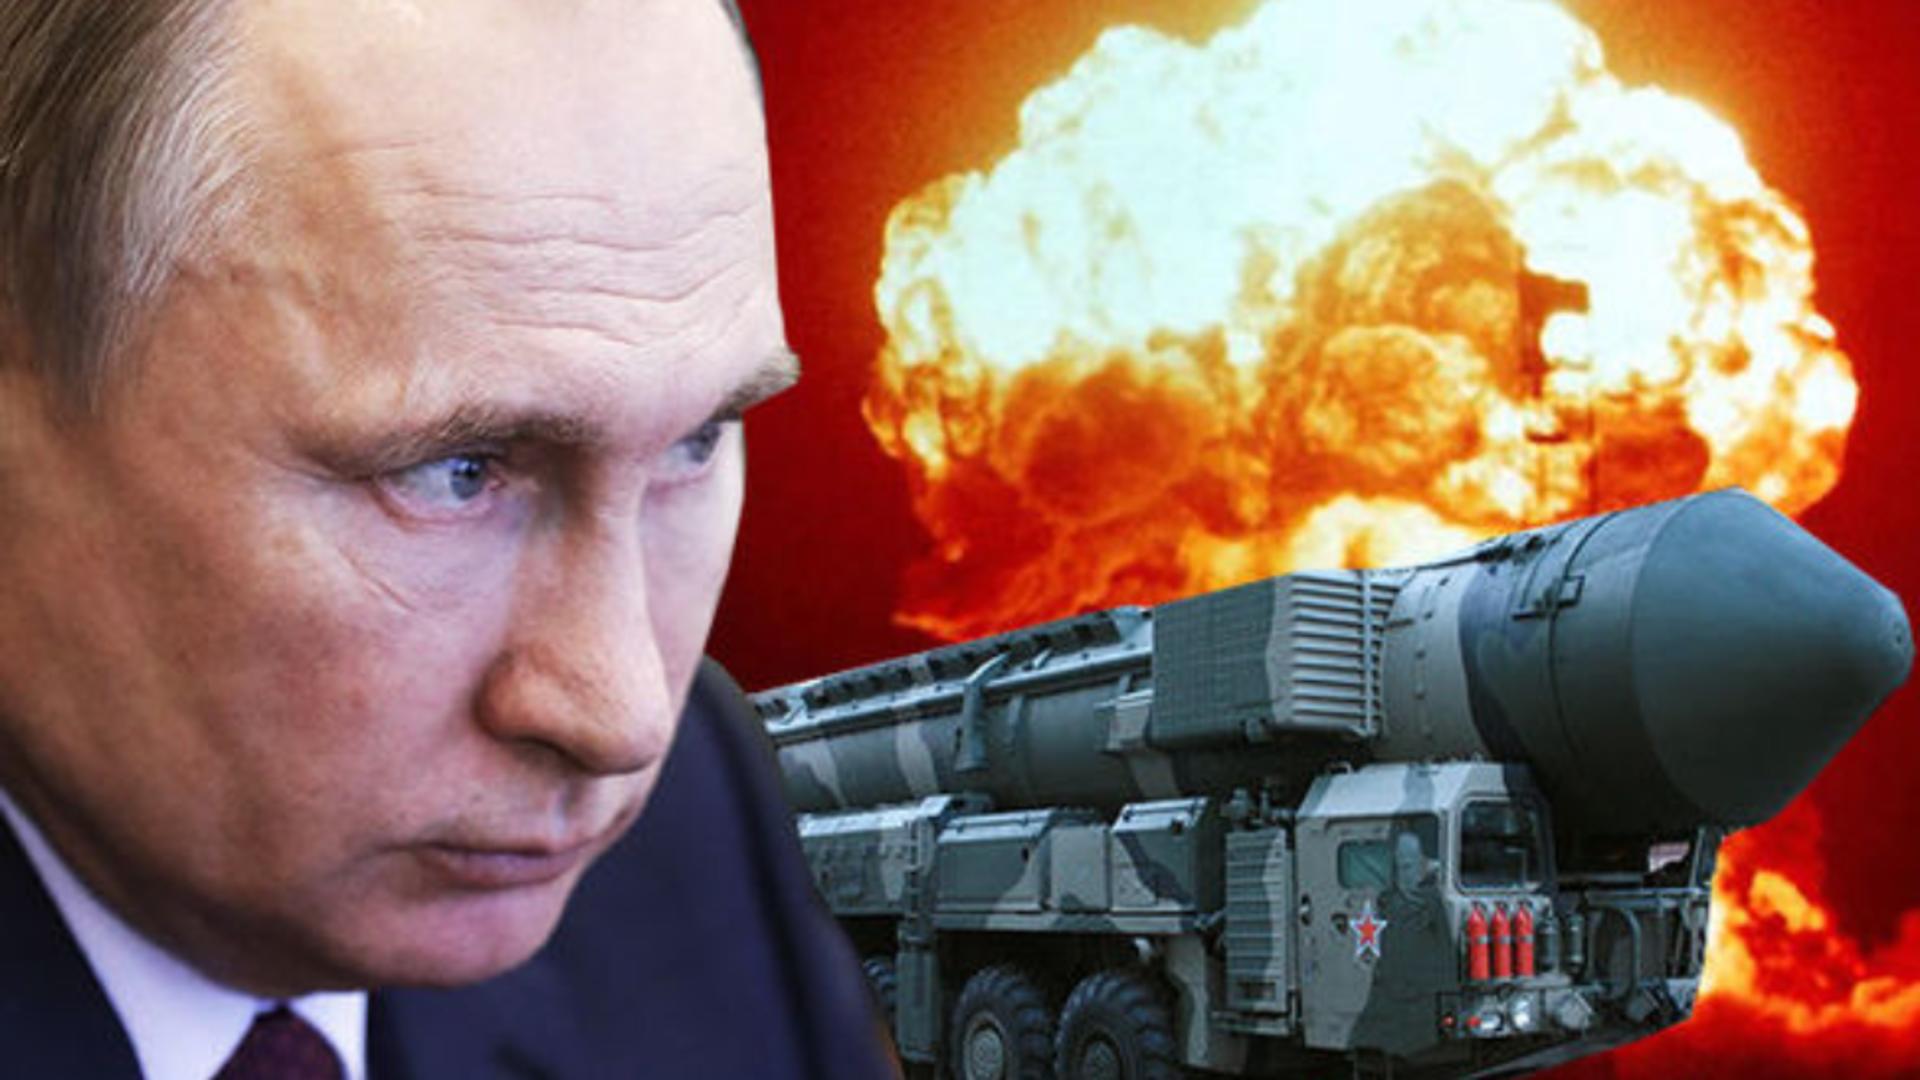 Statele Unite s-au temut de un atac NUCLEAR al Rusiei în Ucraina, la sfârșitul anului 2022 – CNN